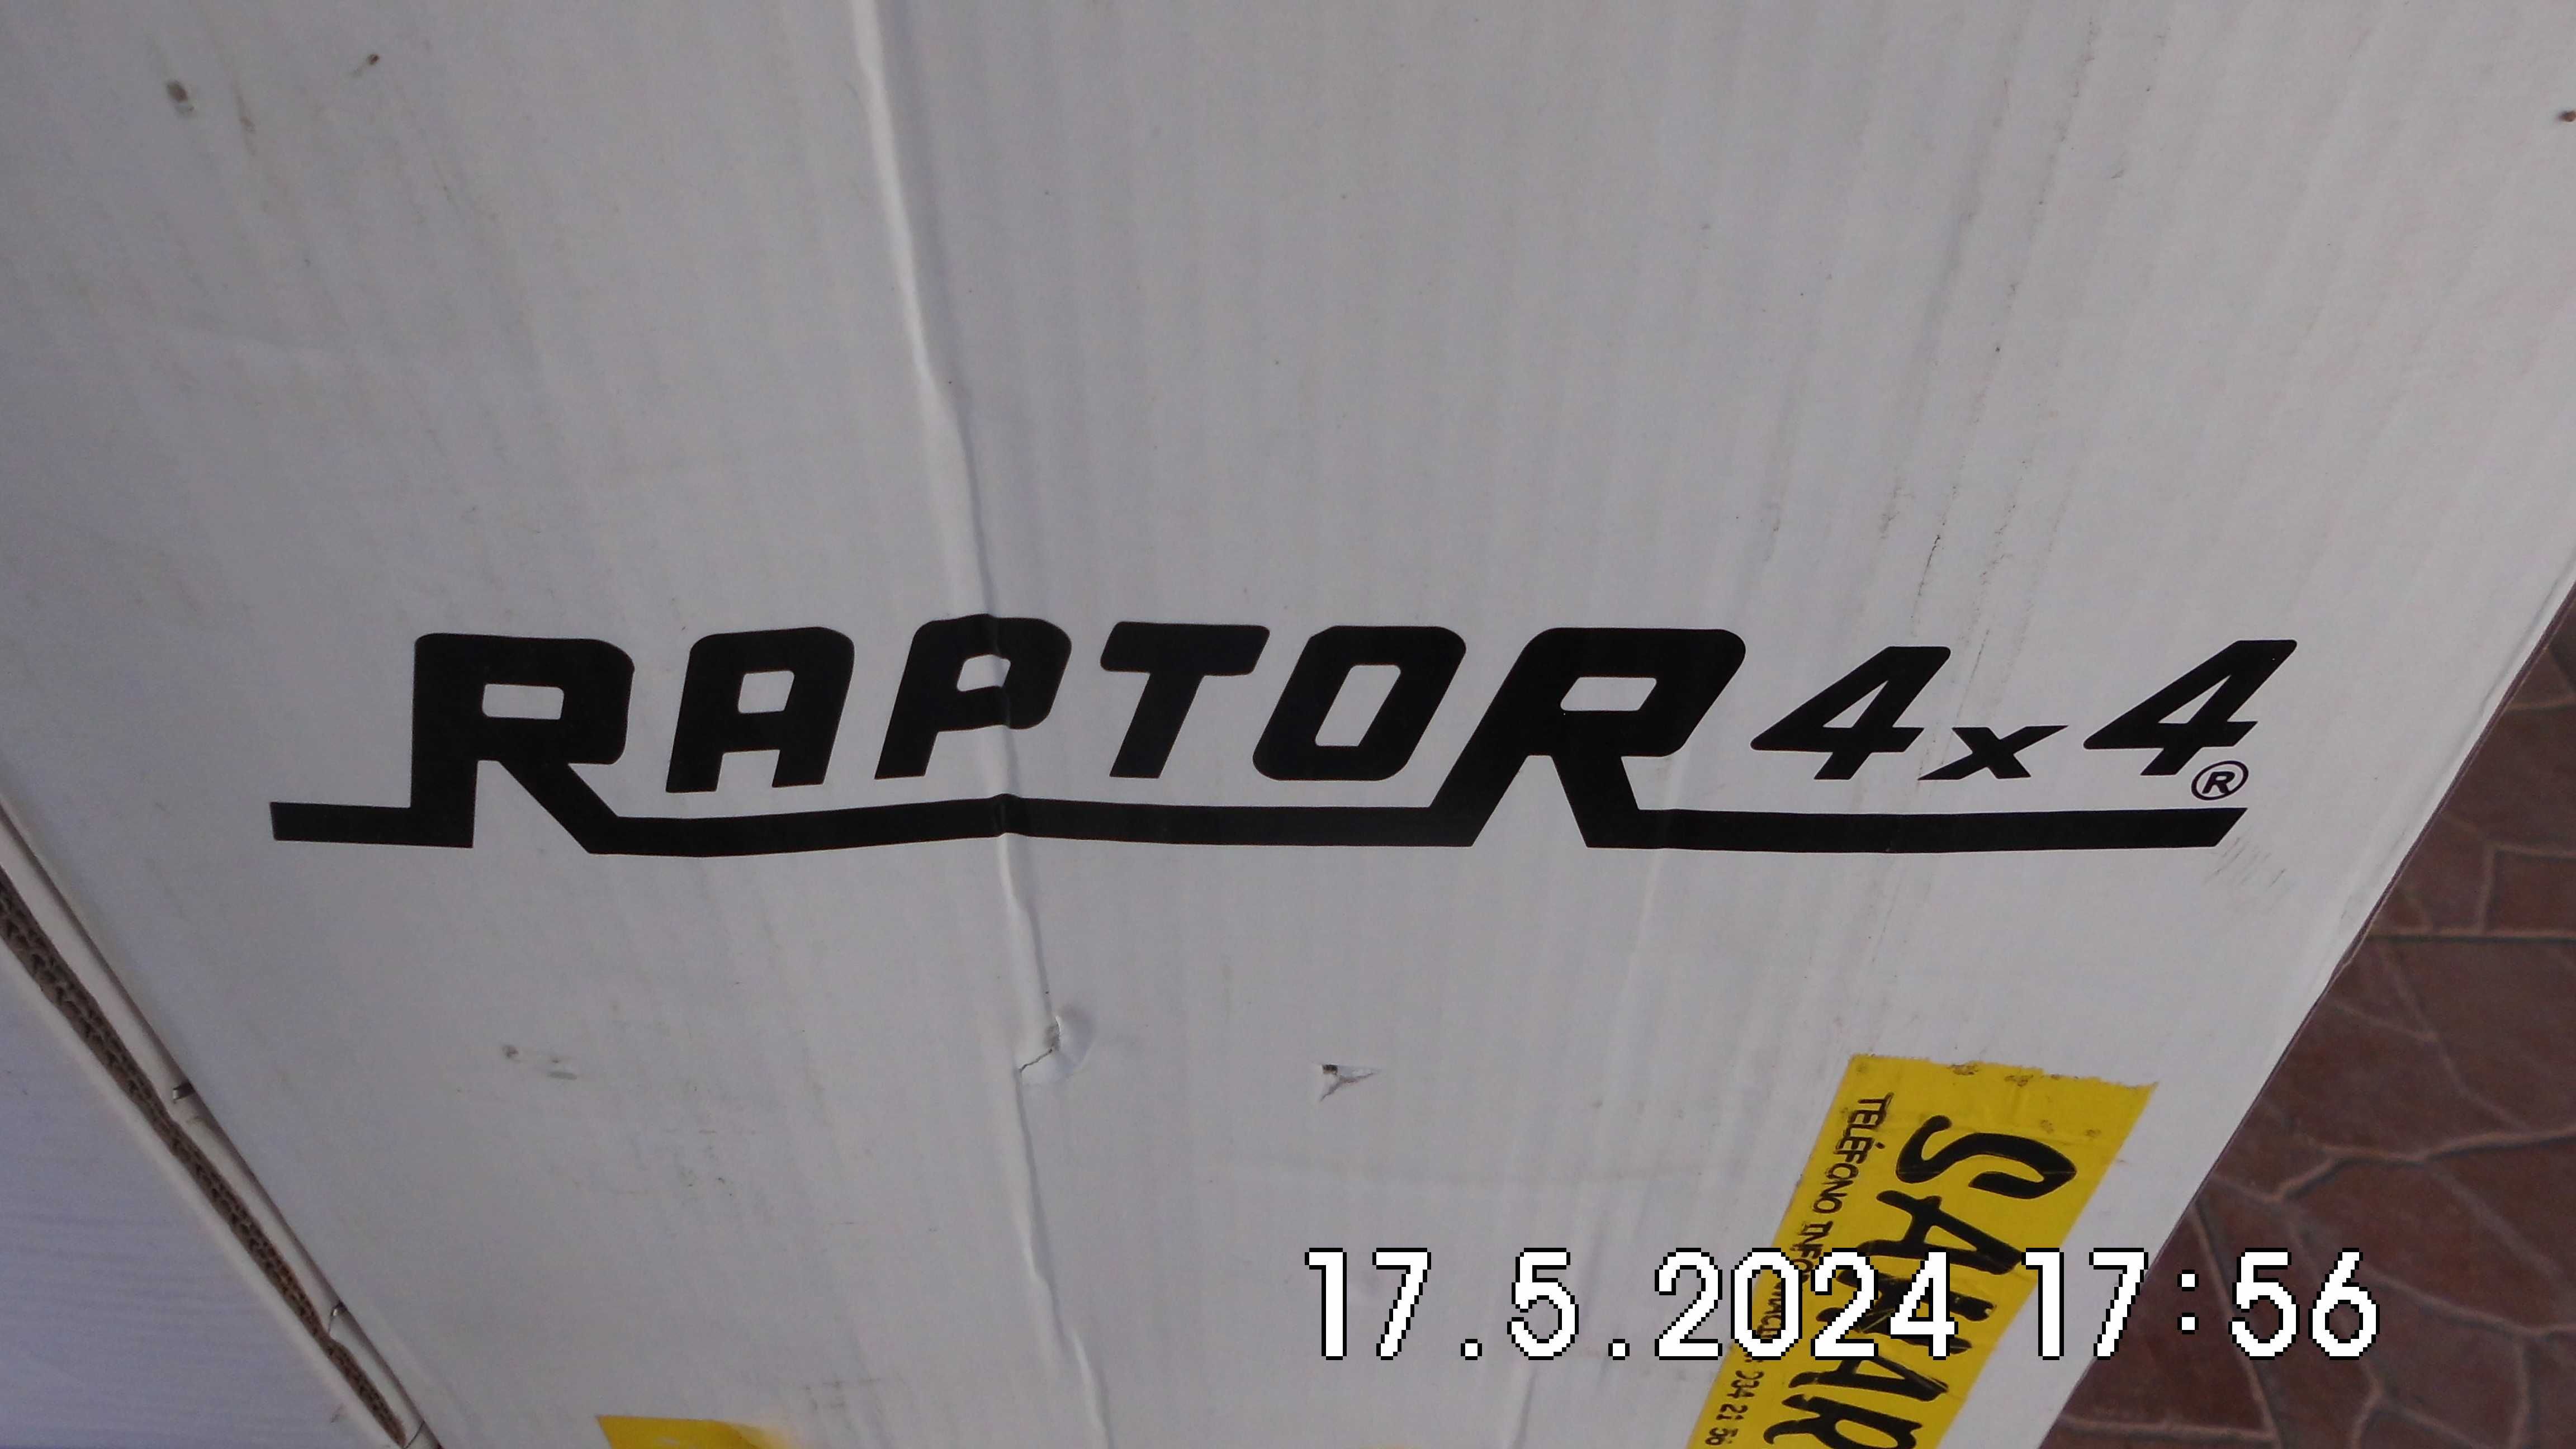 Kit de suspensão +2 polegadas da marca RAPTOR 4X4